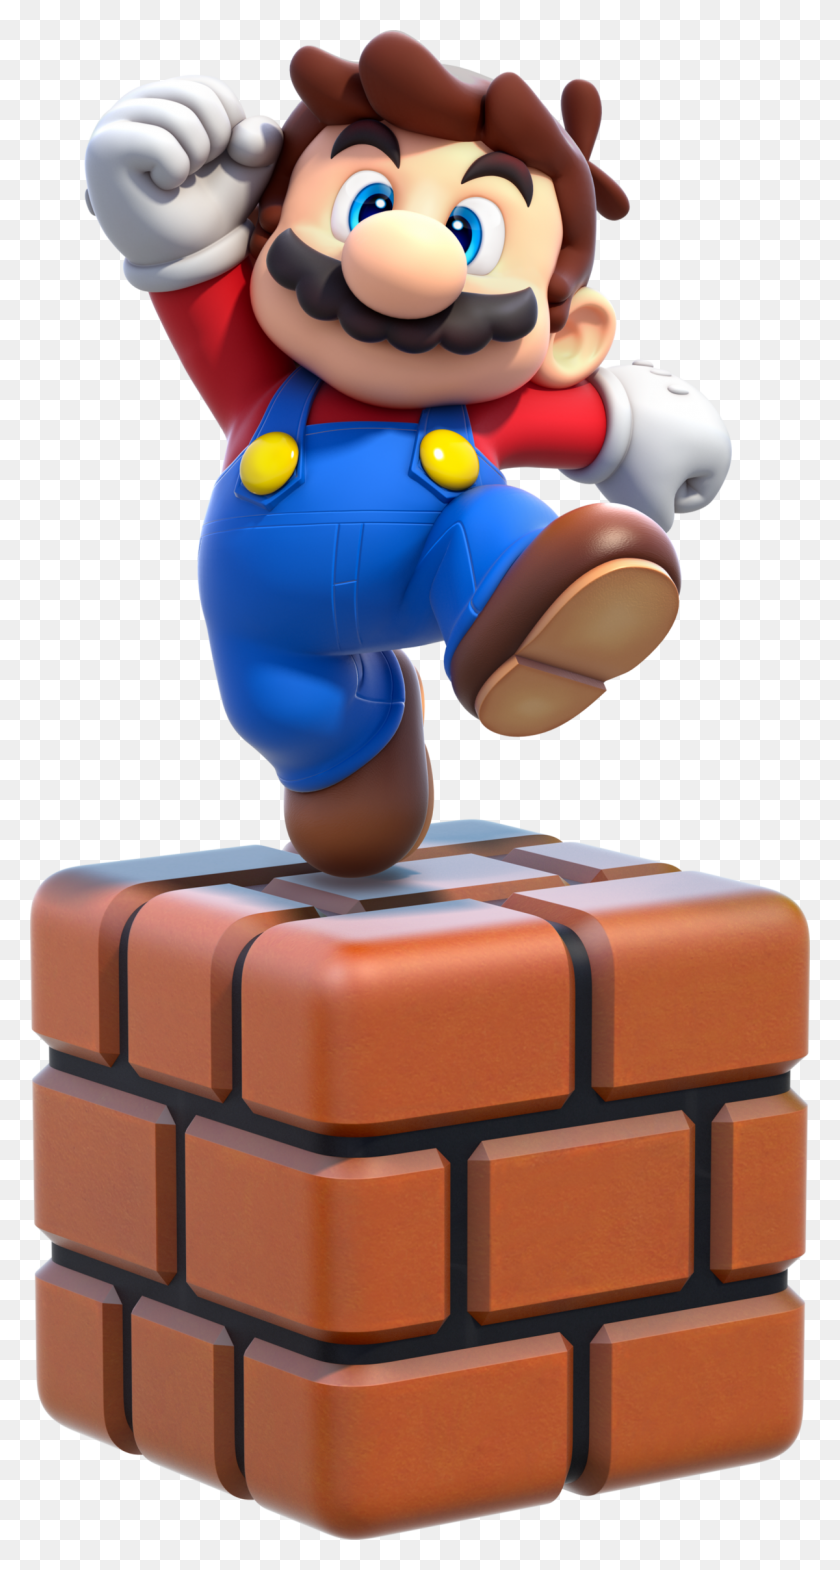 1200x2324 Descargar Png / Super Mario Wiki Super Mario Small Mario, Toy, Robot, Figurine Hd Png